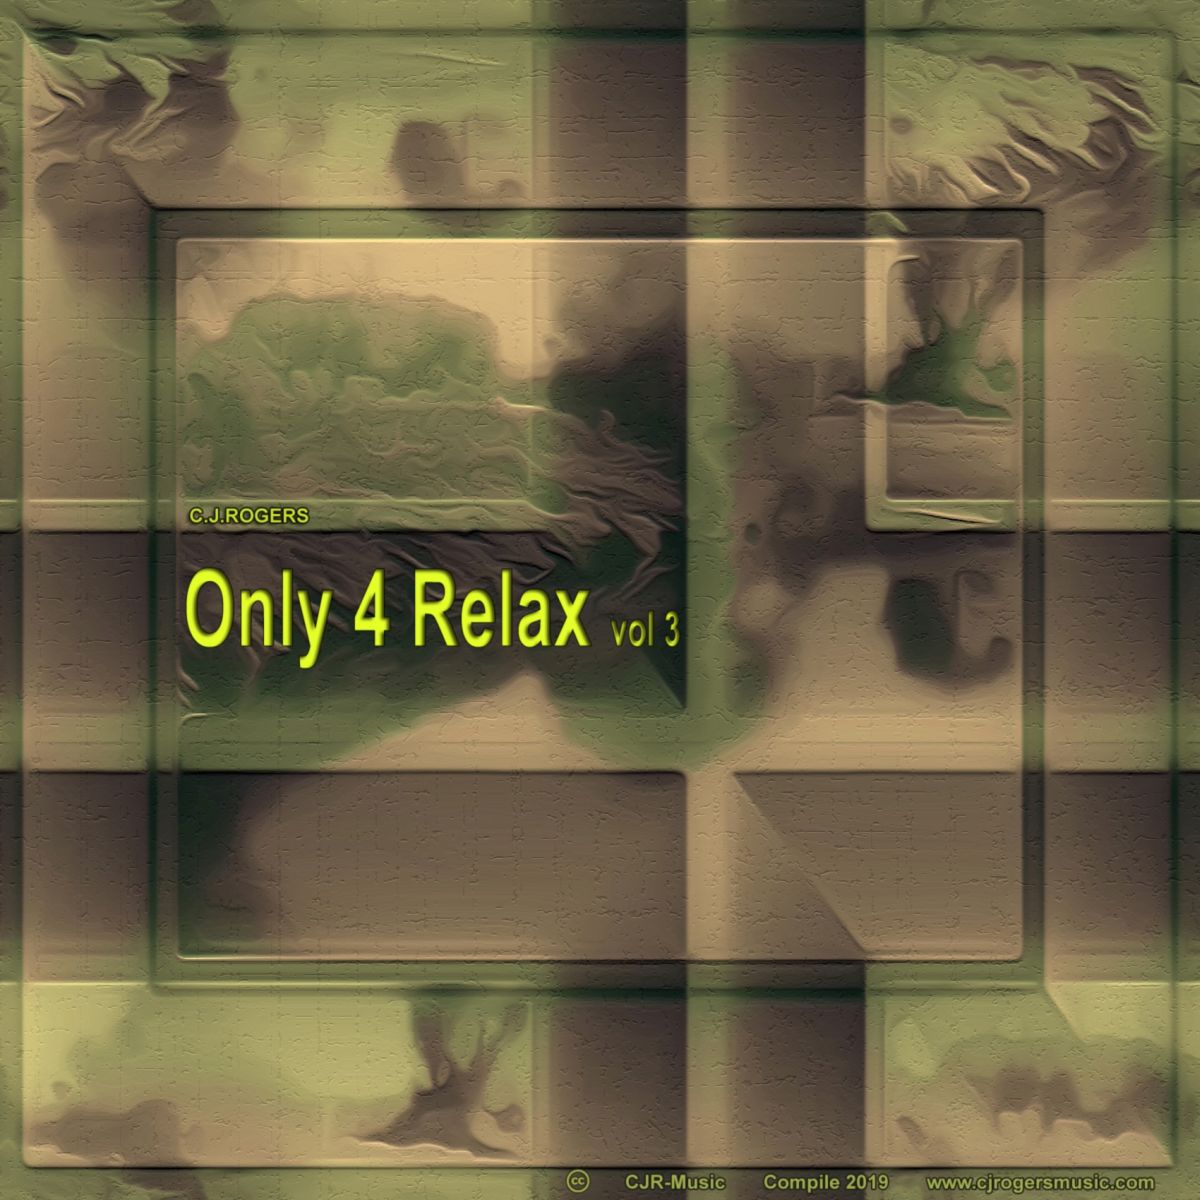 Only 4 Relax vol 3 - Fullsize Cover Art